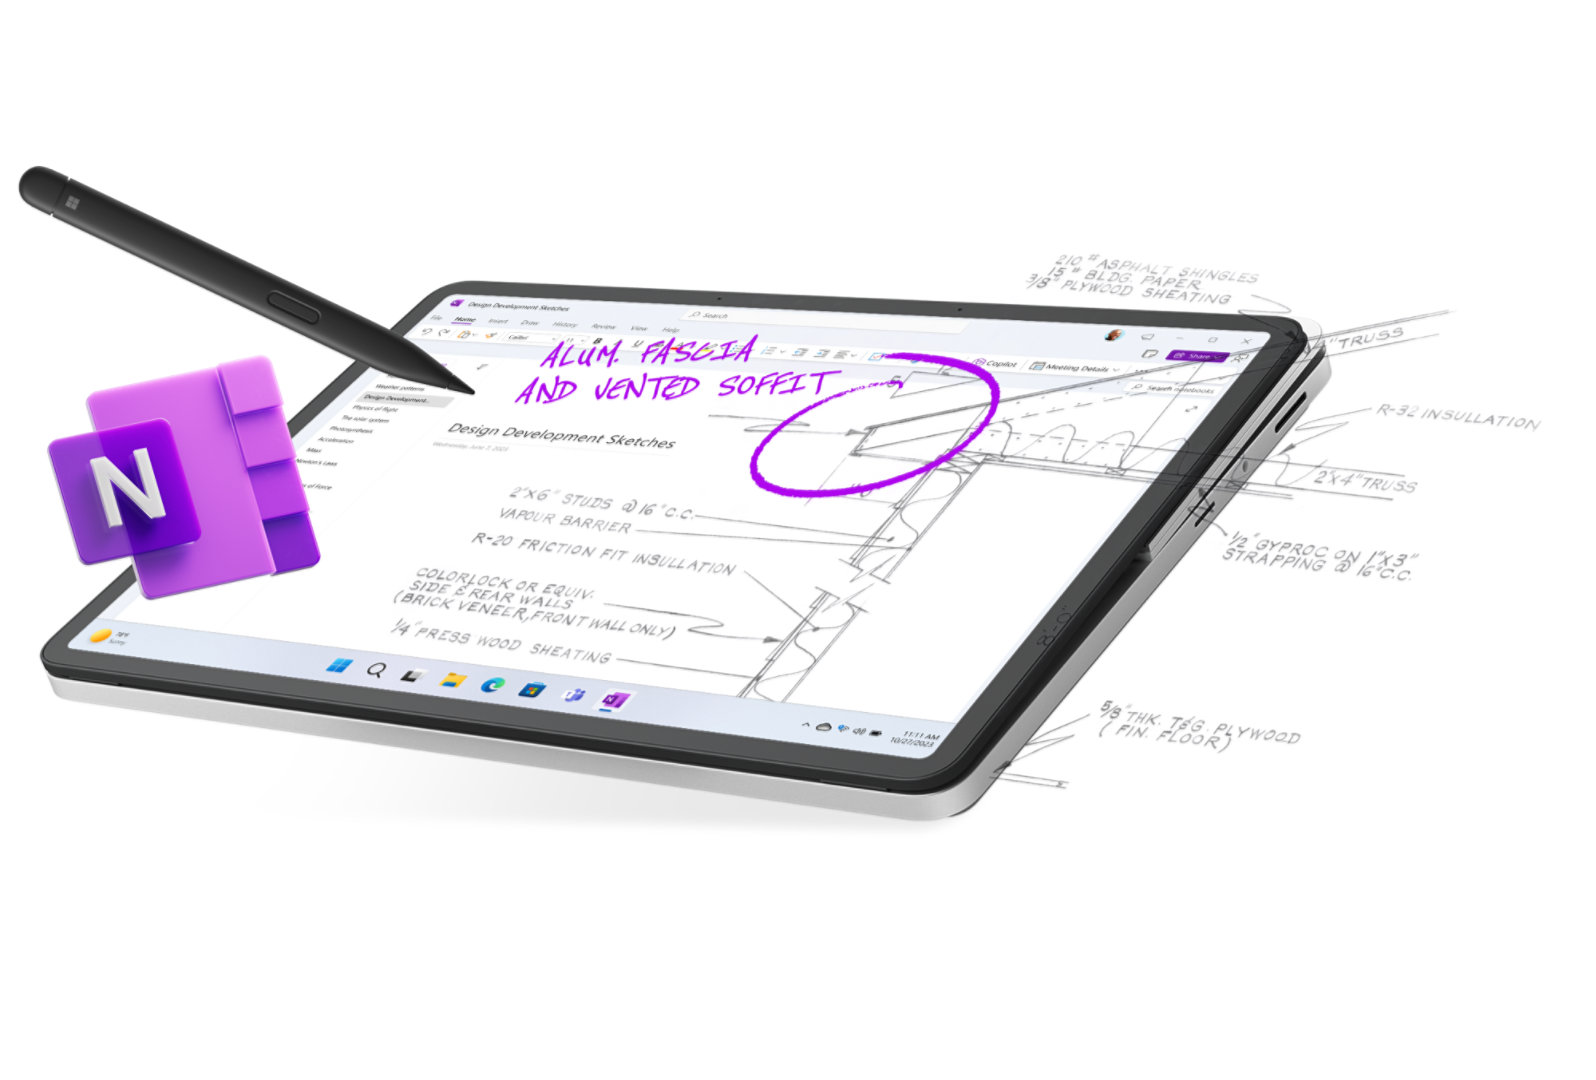 Surface Laptop Studio 2 في الوضع اللوحي يعرض قلمًا رقميًا ونباتًا وملاحظات مكتوبة وأيقونة OneNote تخرج من شاشة الجهاز.